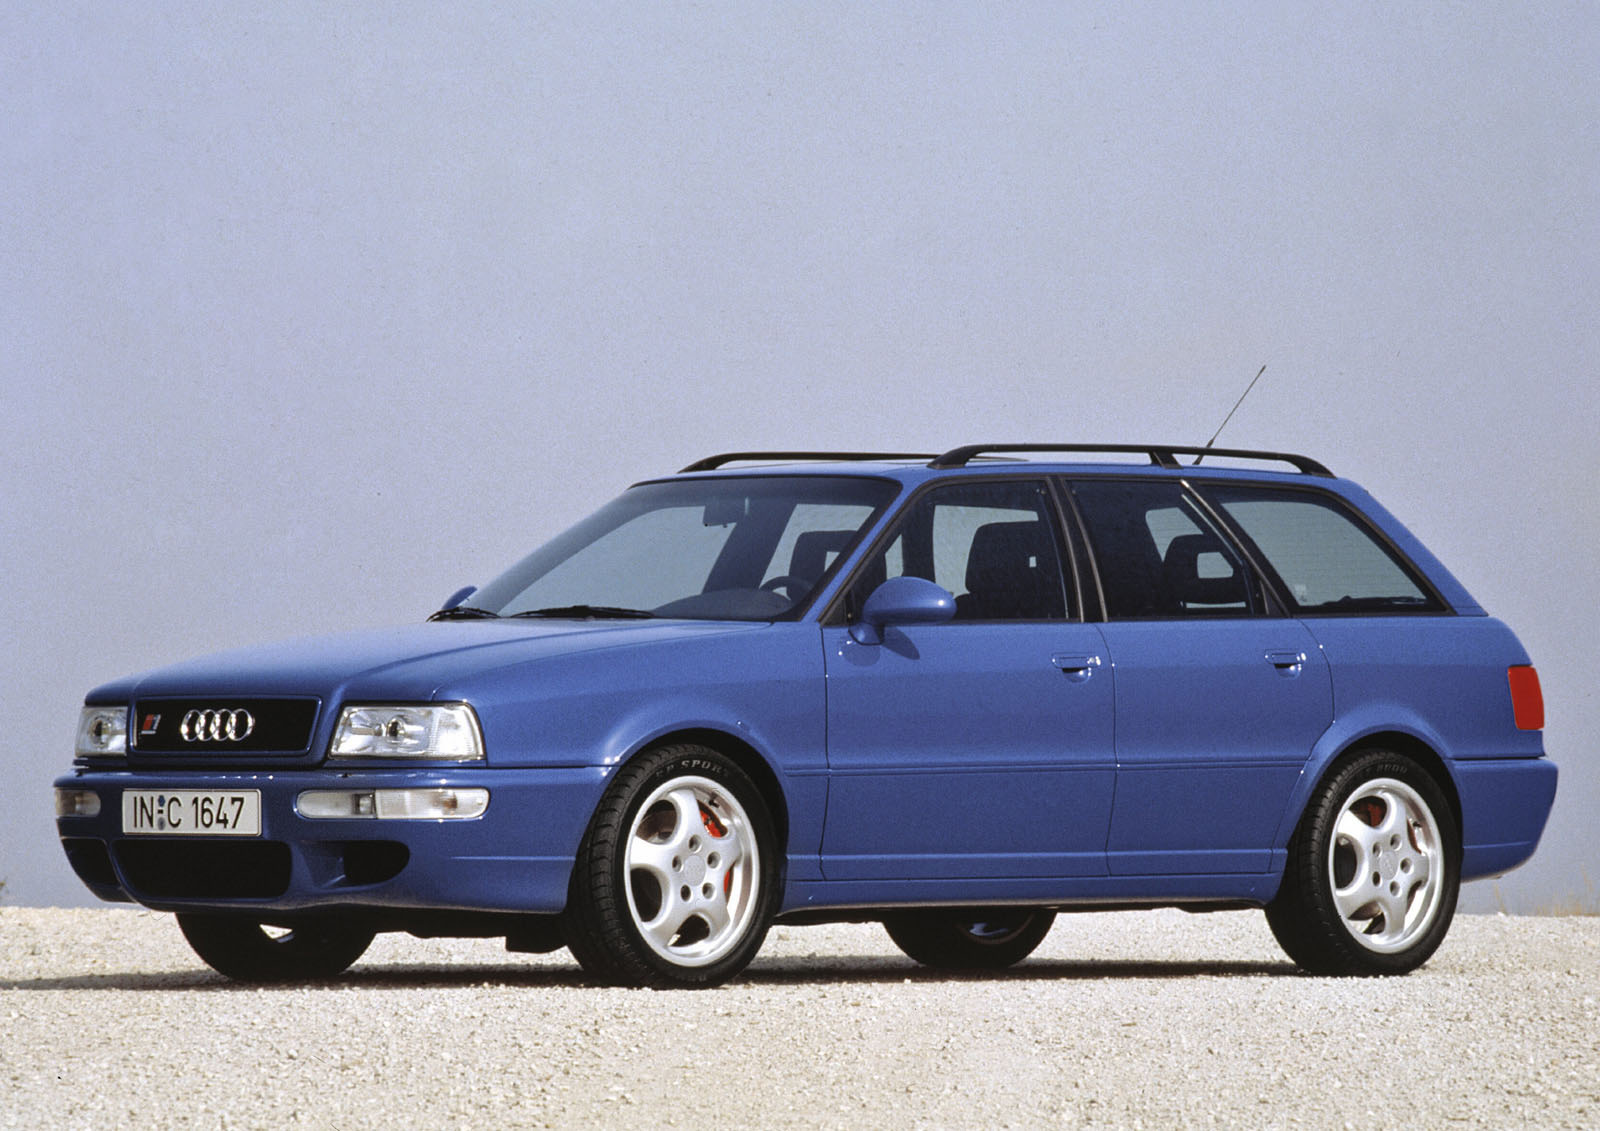 ¡Ya han pasado 40 años desde que Audi empezara a apostar por los cinco cilindros!